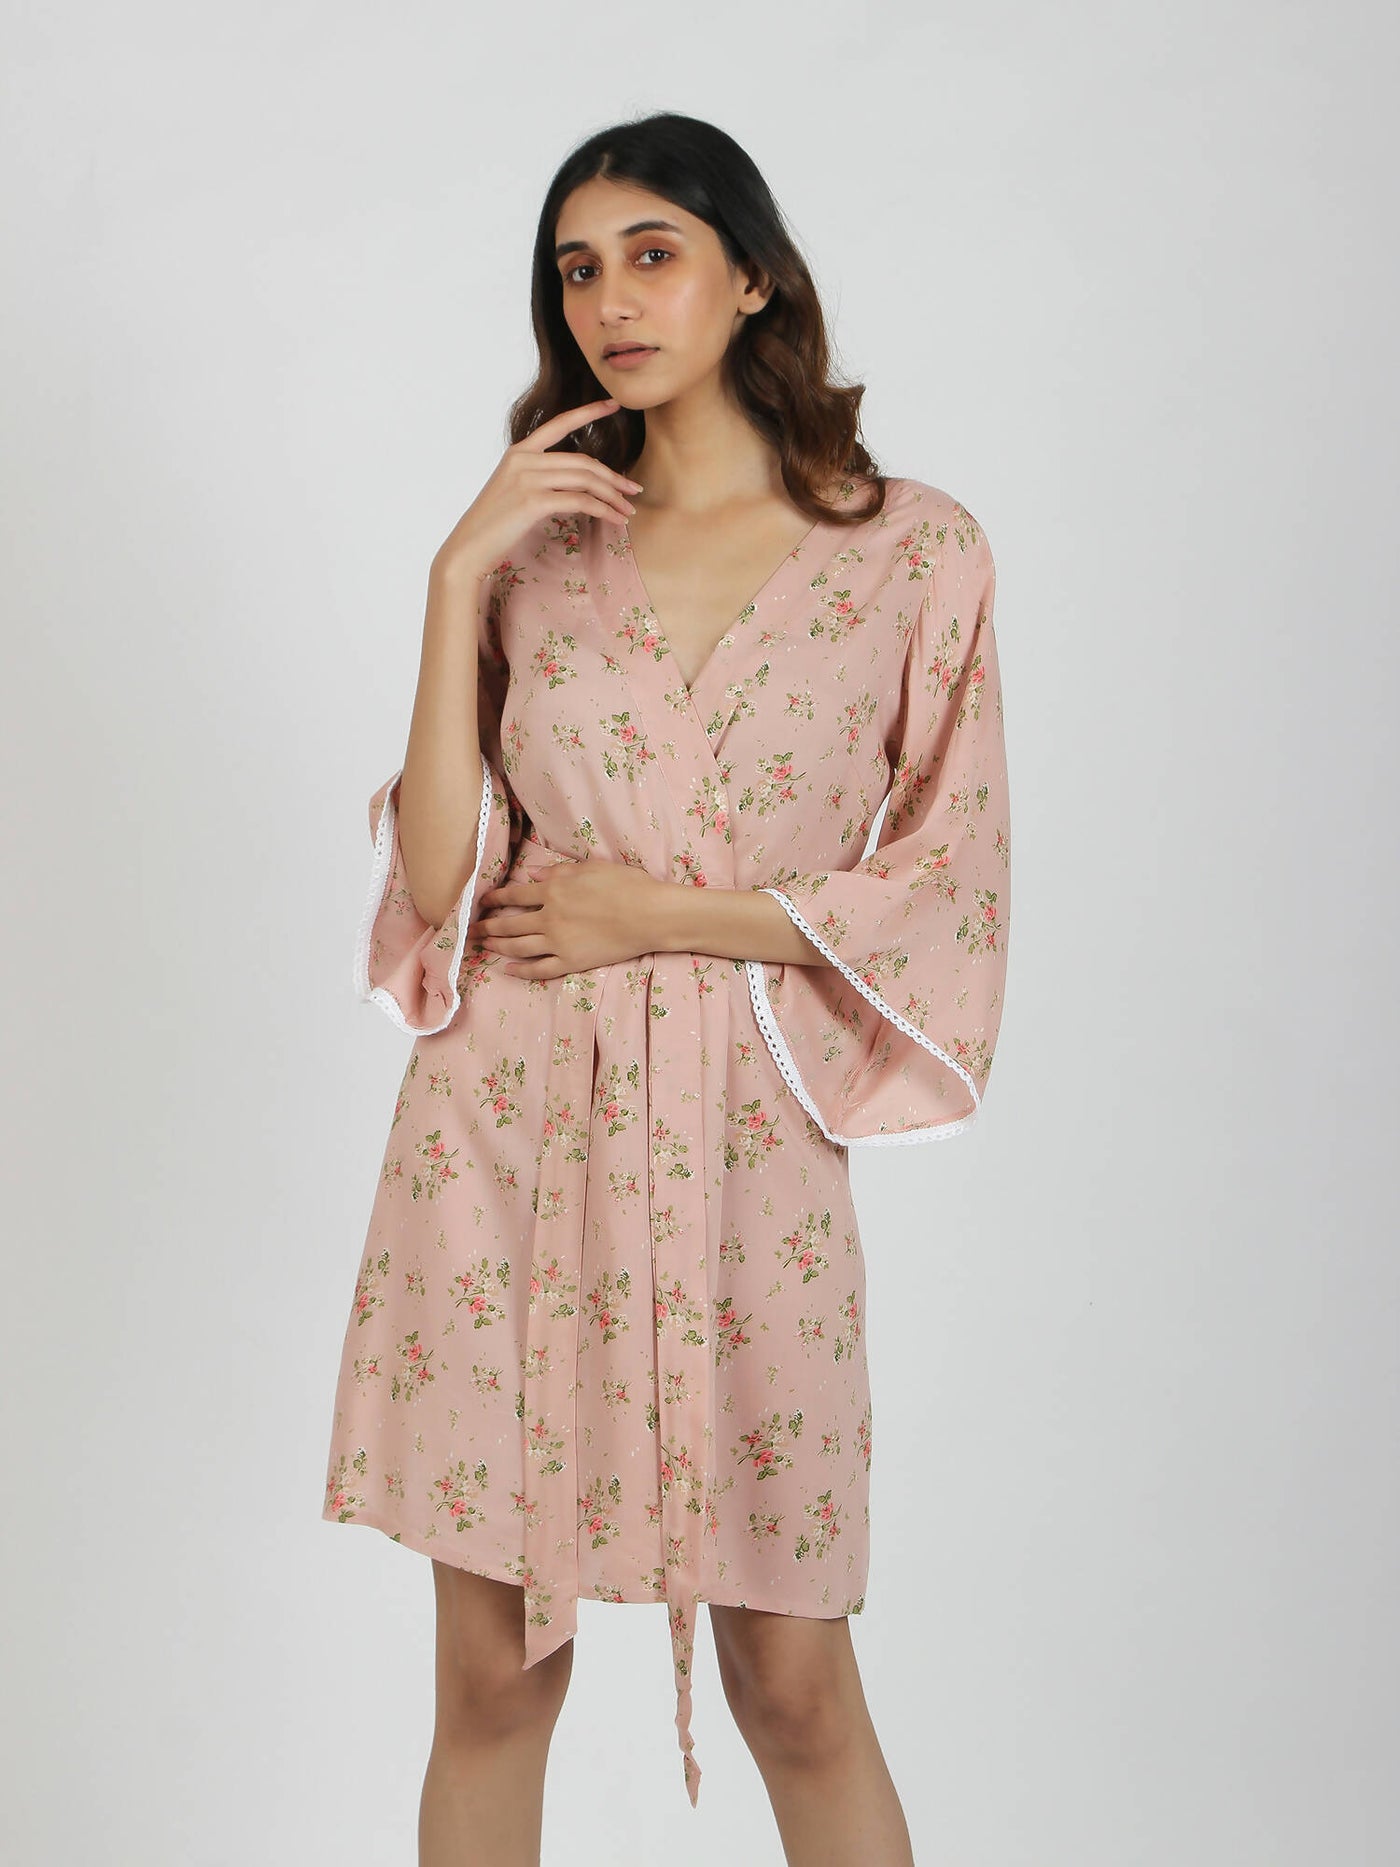 Blush Pink Modal Home Dress / Robe